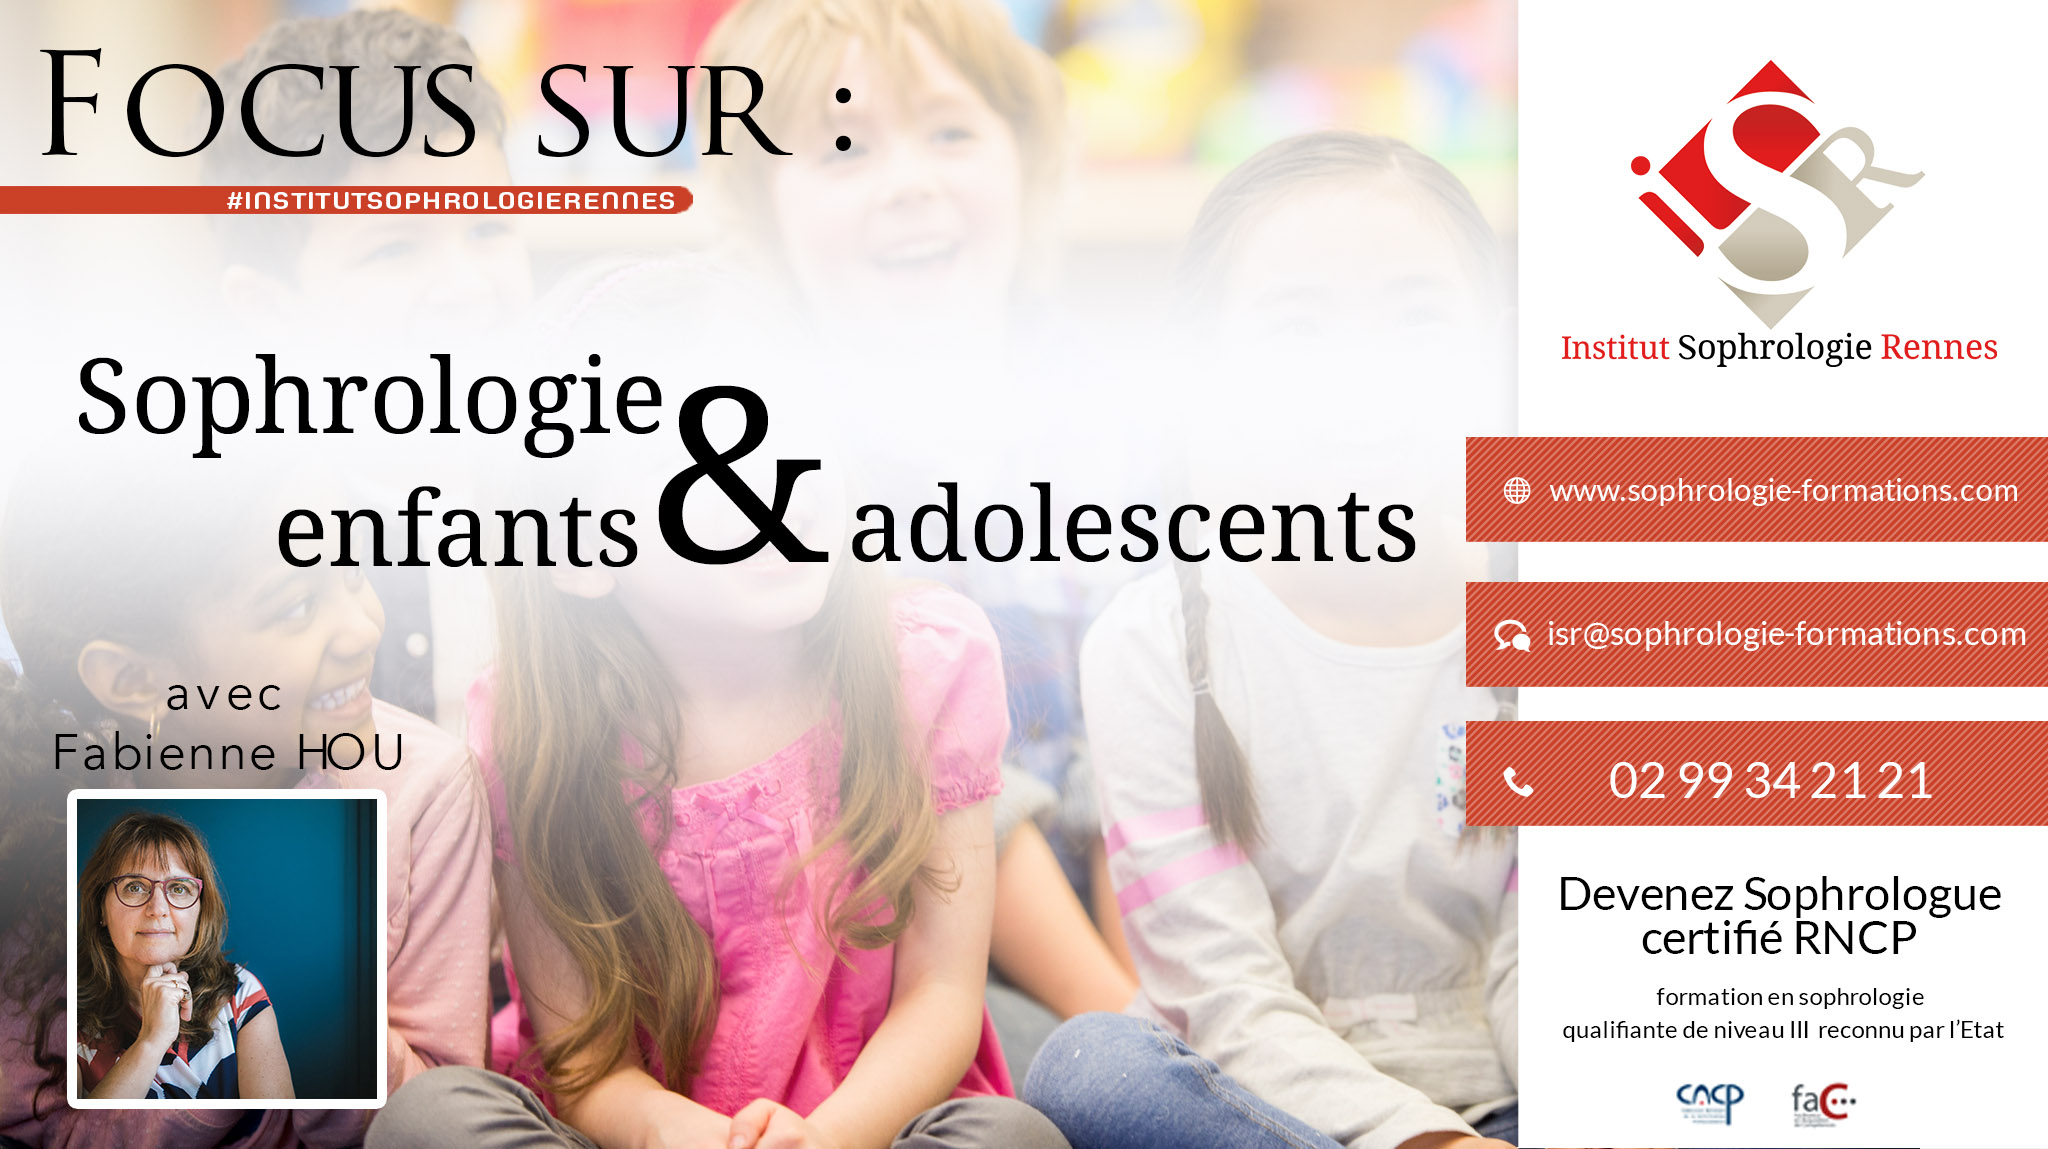 Focus sur Sophrologie Enfants & Adolescents - ISR